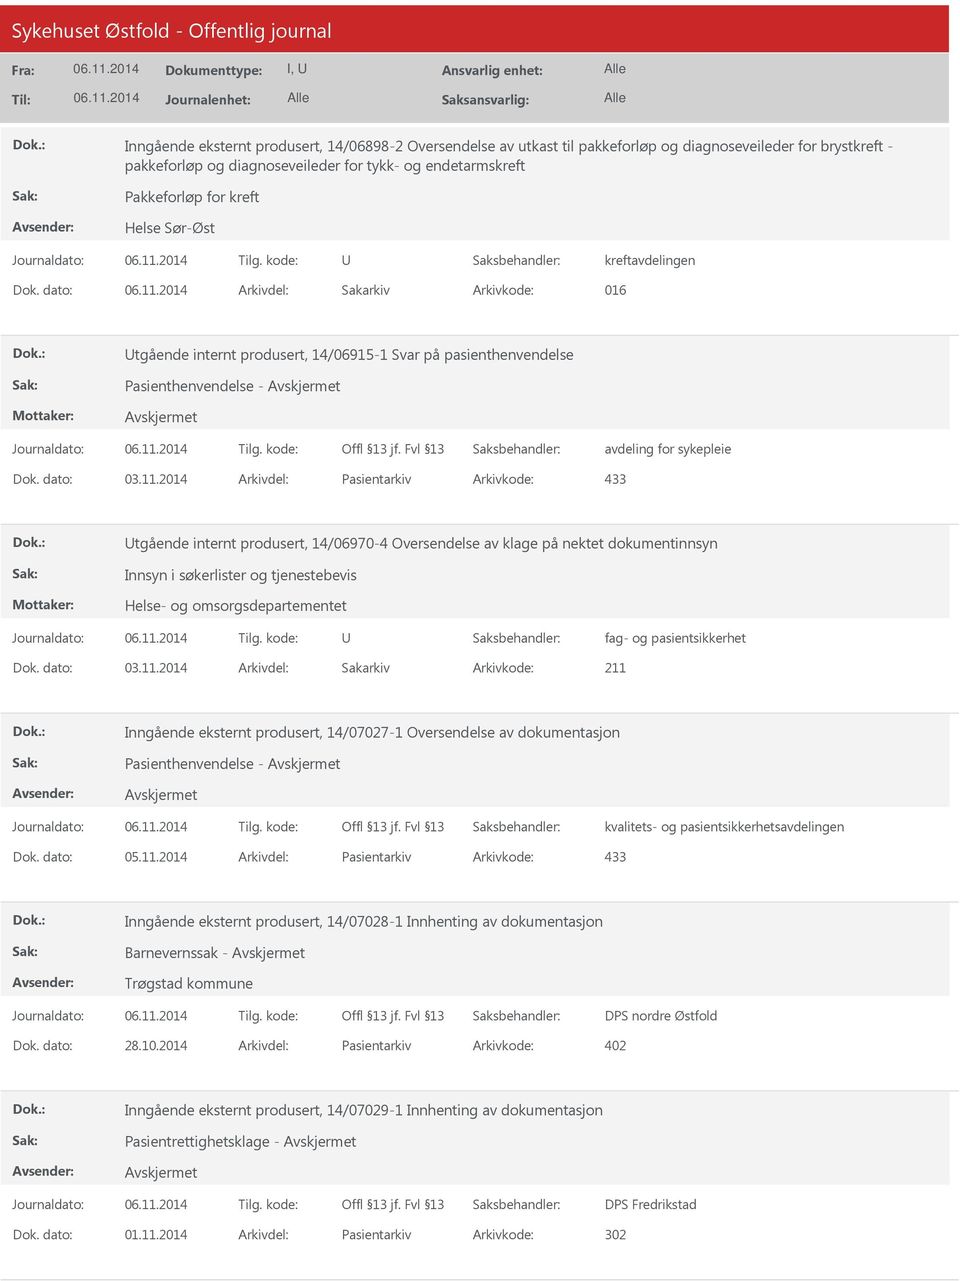 2014 Arkivdel: Pasientarkiv Arkivkode: 433 tgående internt produsert, 14/06970-4 Oversendelse av klage på nektet dokumentinnsyn Innsyn i søkerlister og tjenestebevis Helse- og omsorgsdepartementet